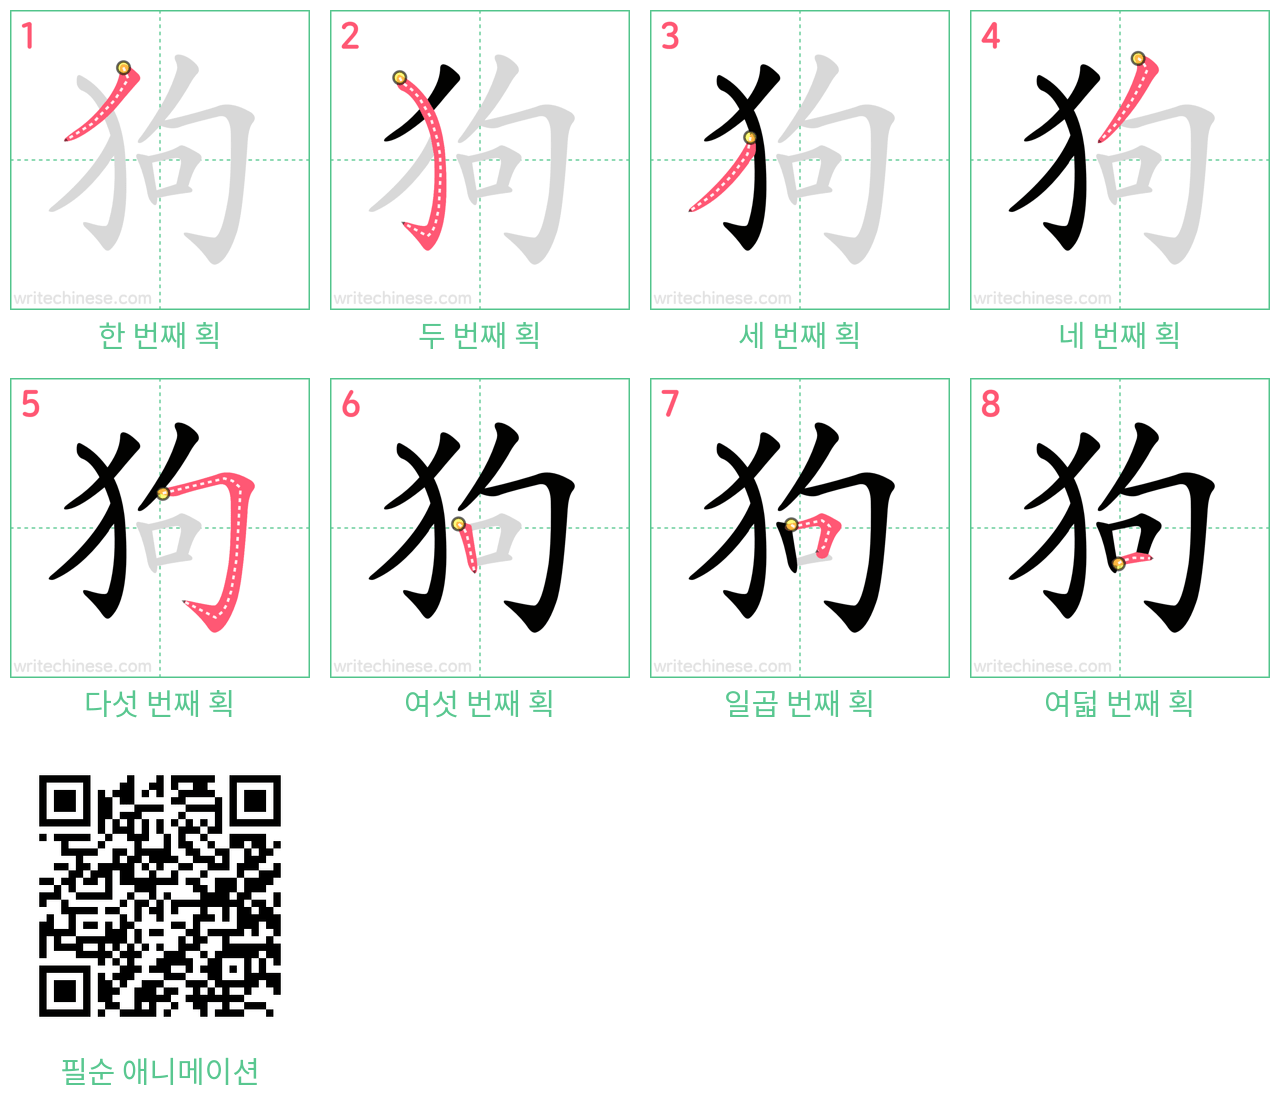 狗 step-by-step stroke order diagrams